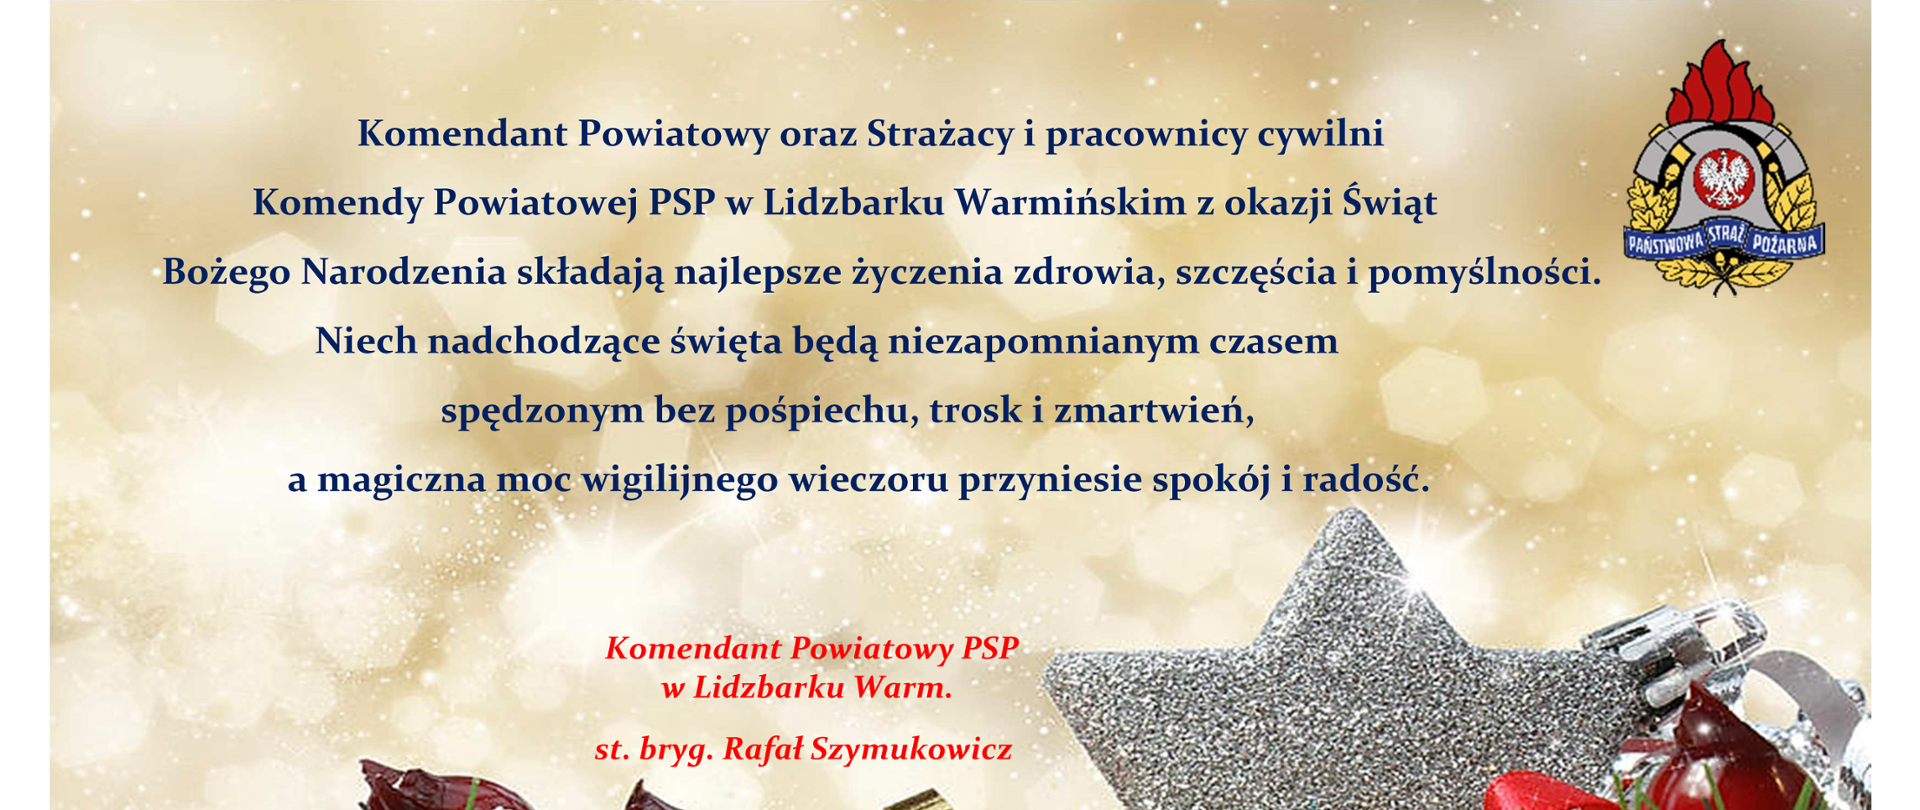 Świąteczne życzenia Komendanta Powiatowego PSP w Lidzbarku Warmińskim